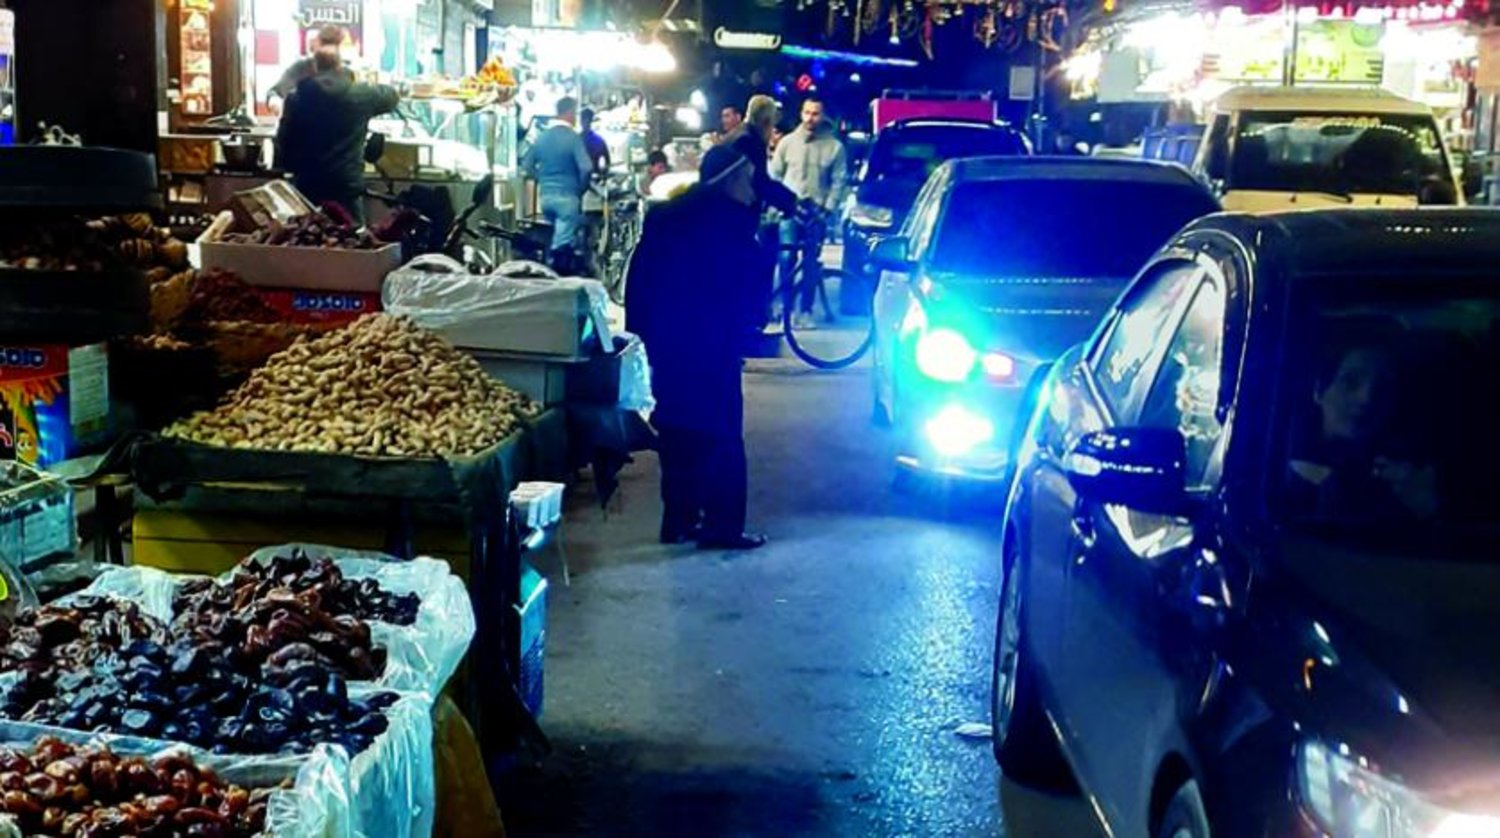 Müşterilerin olmadığı el-Meydan semt çarşısı (Şarku’l Avsat)